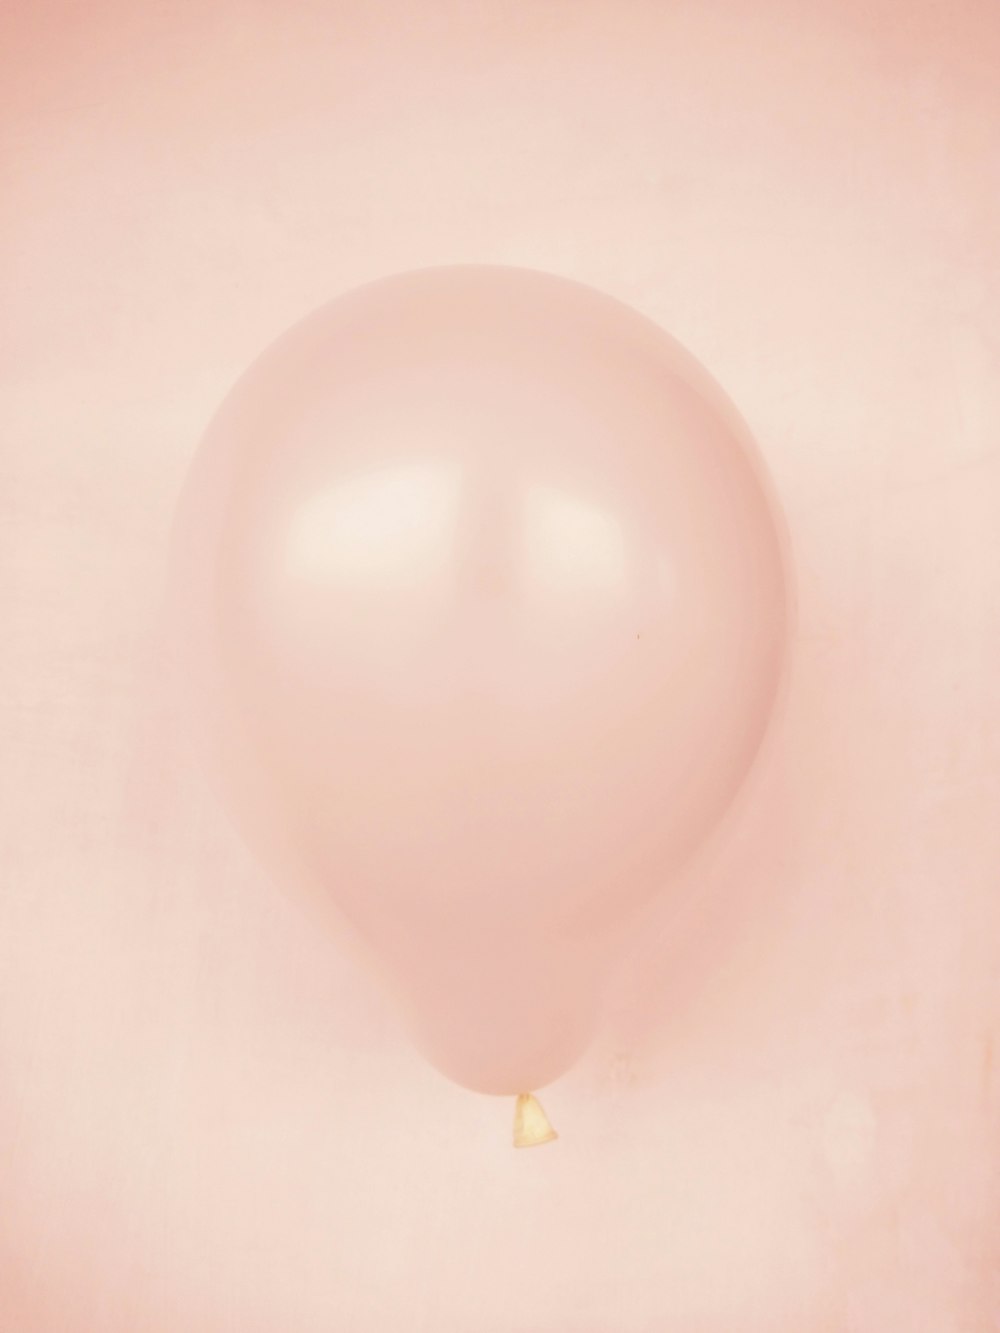 weißer Ballon auf weißer Oberfläche